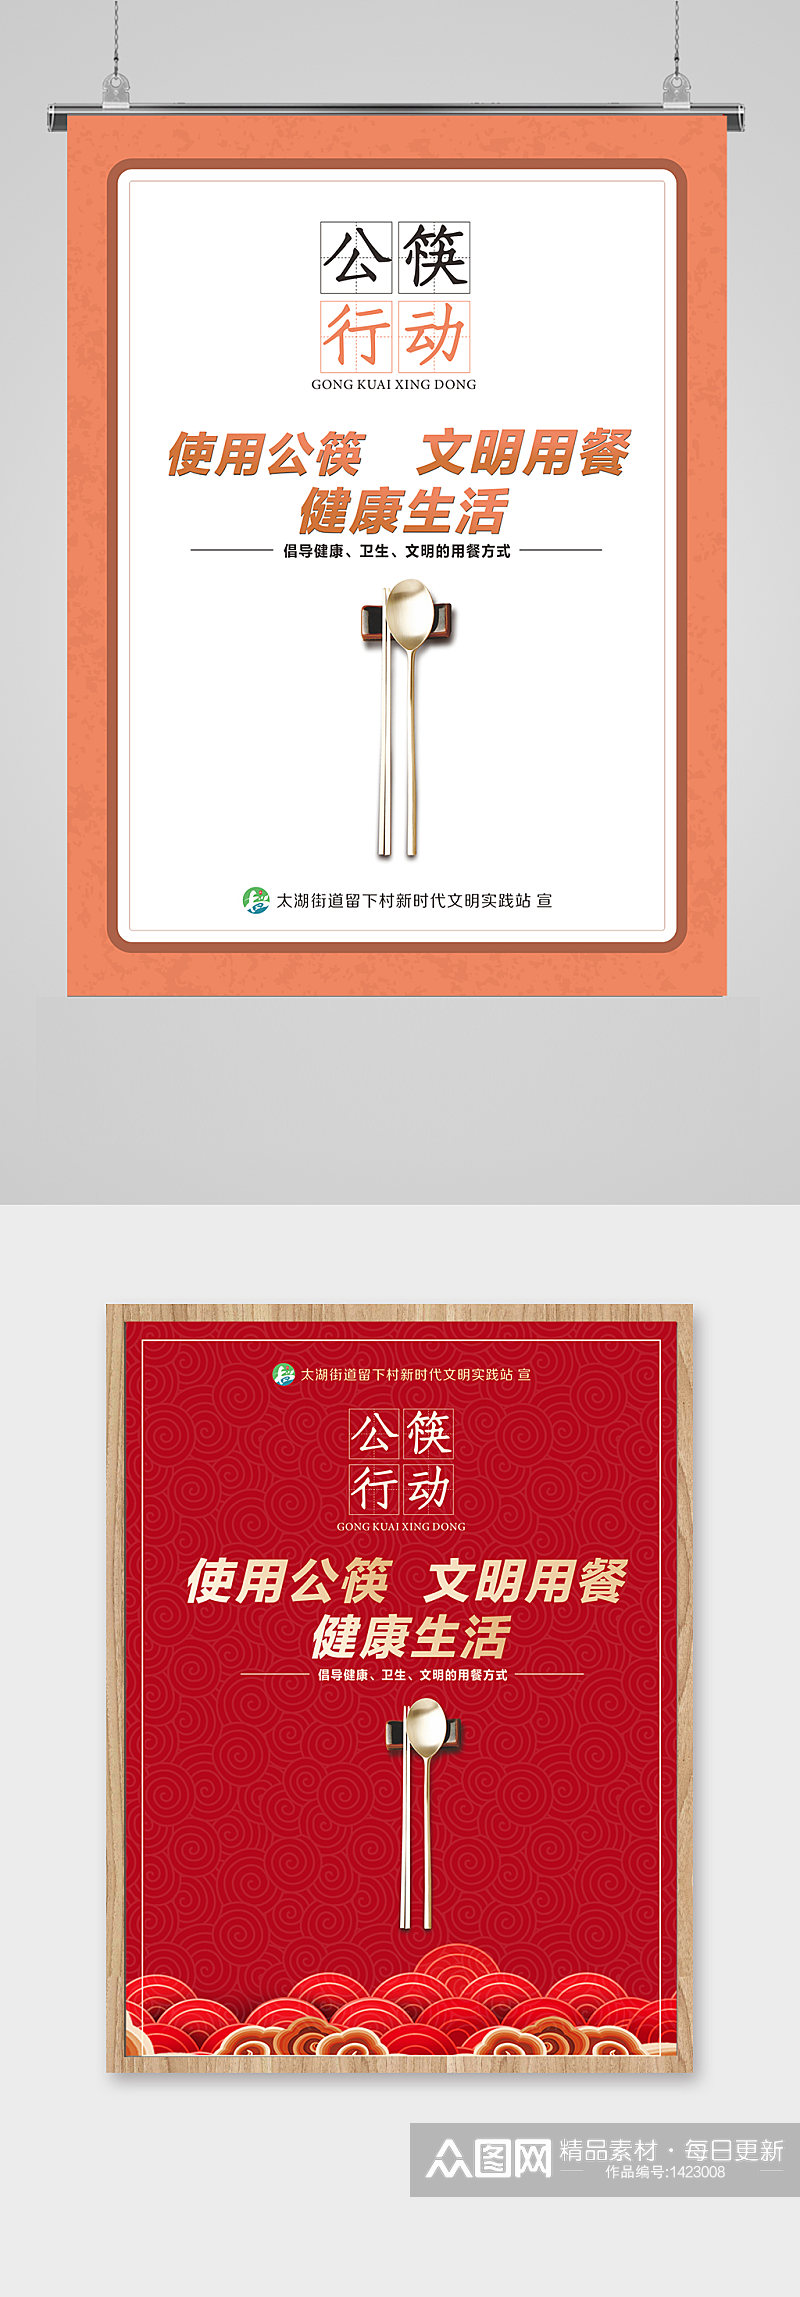 公筷行动公益广告素材